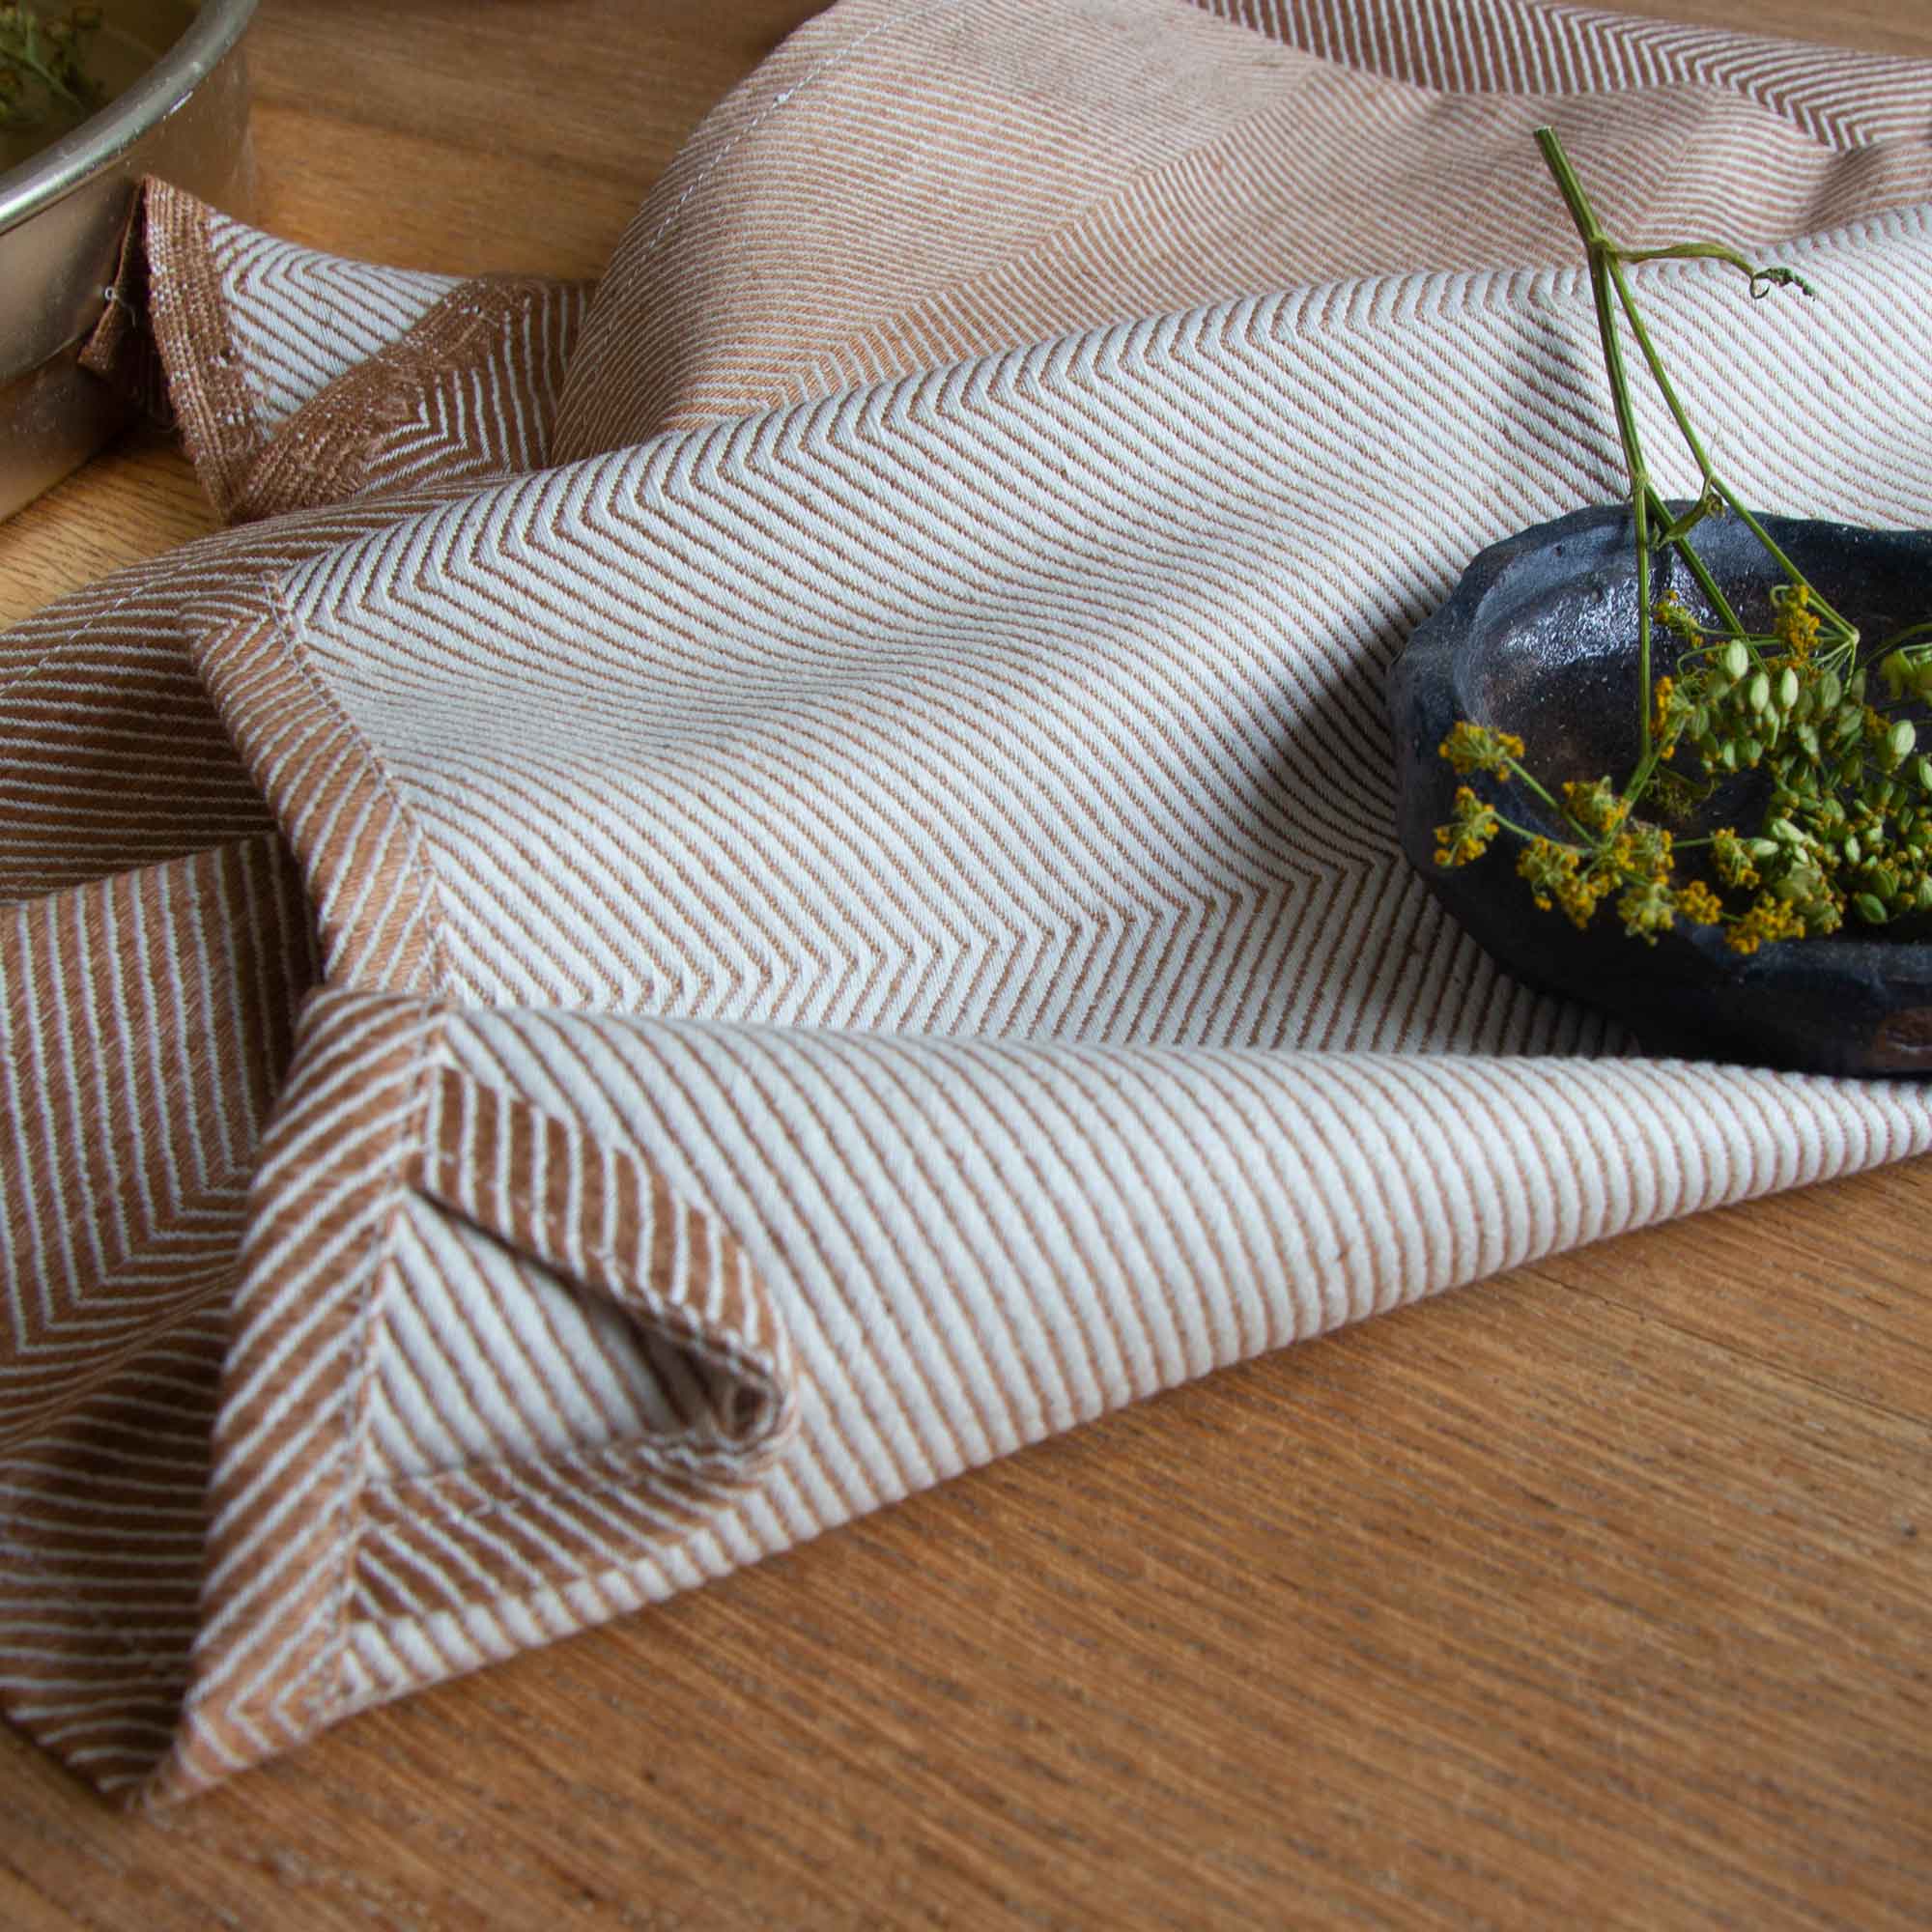 Tea towel, Almond, linen/cotton, design by Anne Rosenberg, RosenbergCph